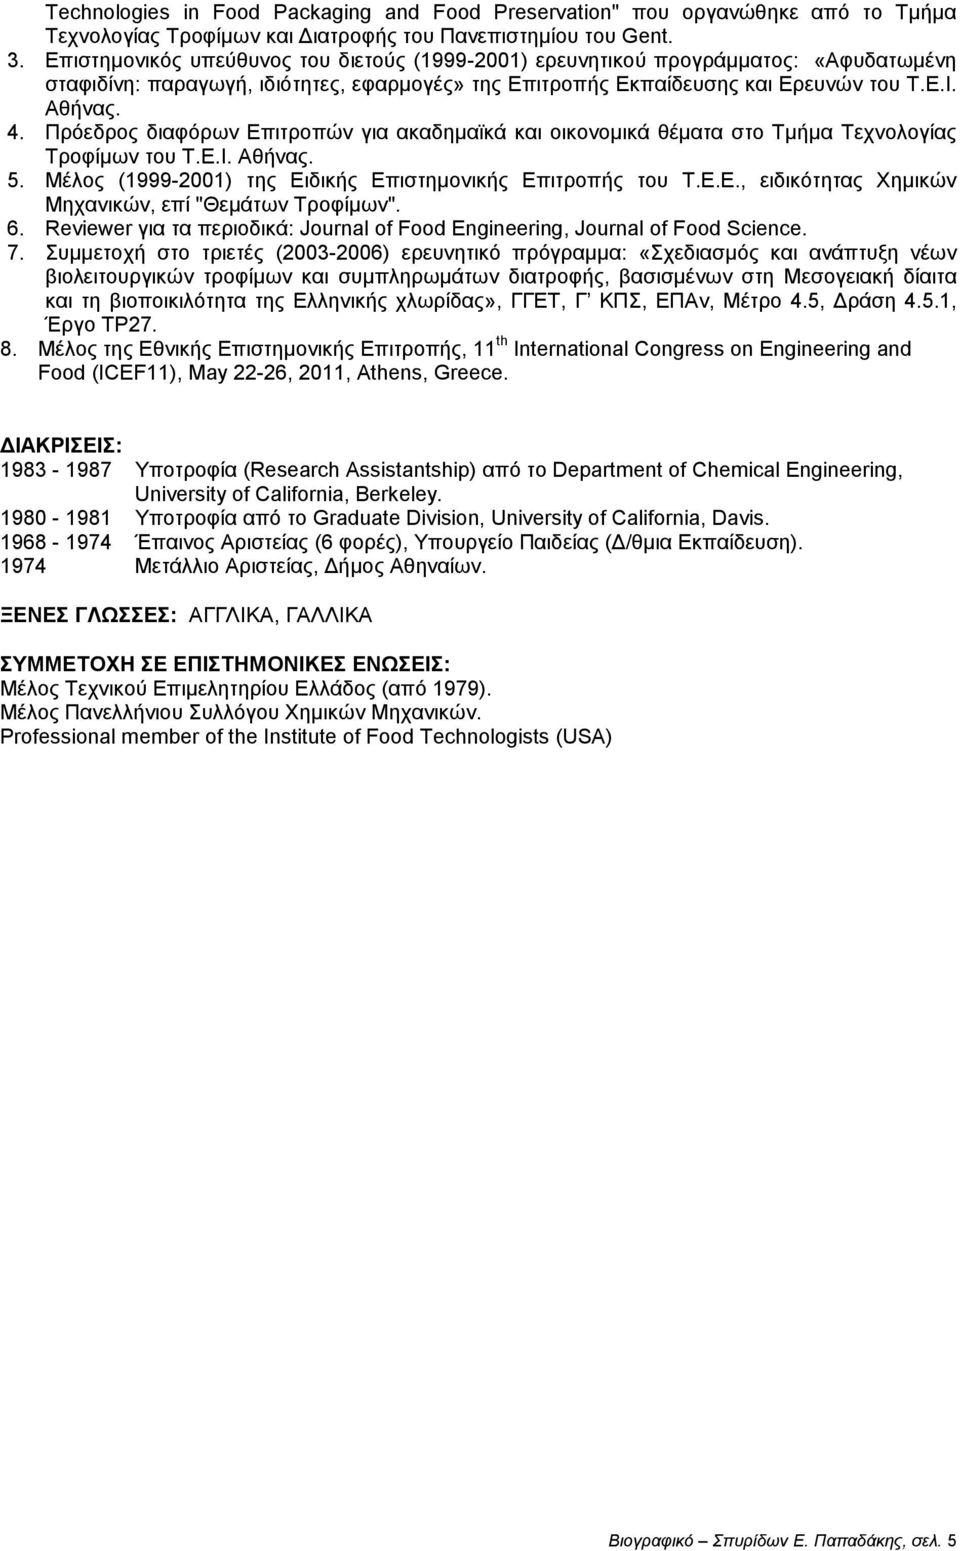 Πρόεδρος διαφόρων Επιτροπών για ακαδημαϊκά και οικονομικά θέματα στο Τμήμα Τεχνολογίας Τροφίμων του Τ.Ε.Ι. Αθήνας. 5. Μέλος (1999-2001) της Ειδικής Επιστημονικής Επιτροπής του Τ.Ε.Ε., ειδικότητας Χημικών Μηχανικών, επί "Θεμάτων Τροφίμων".